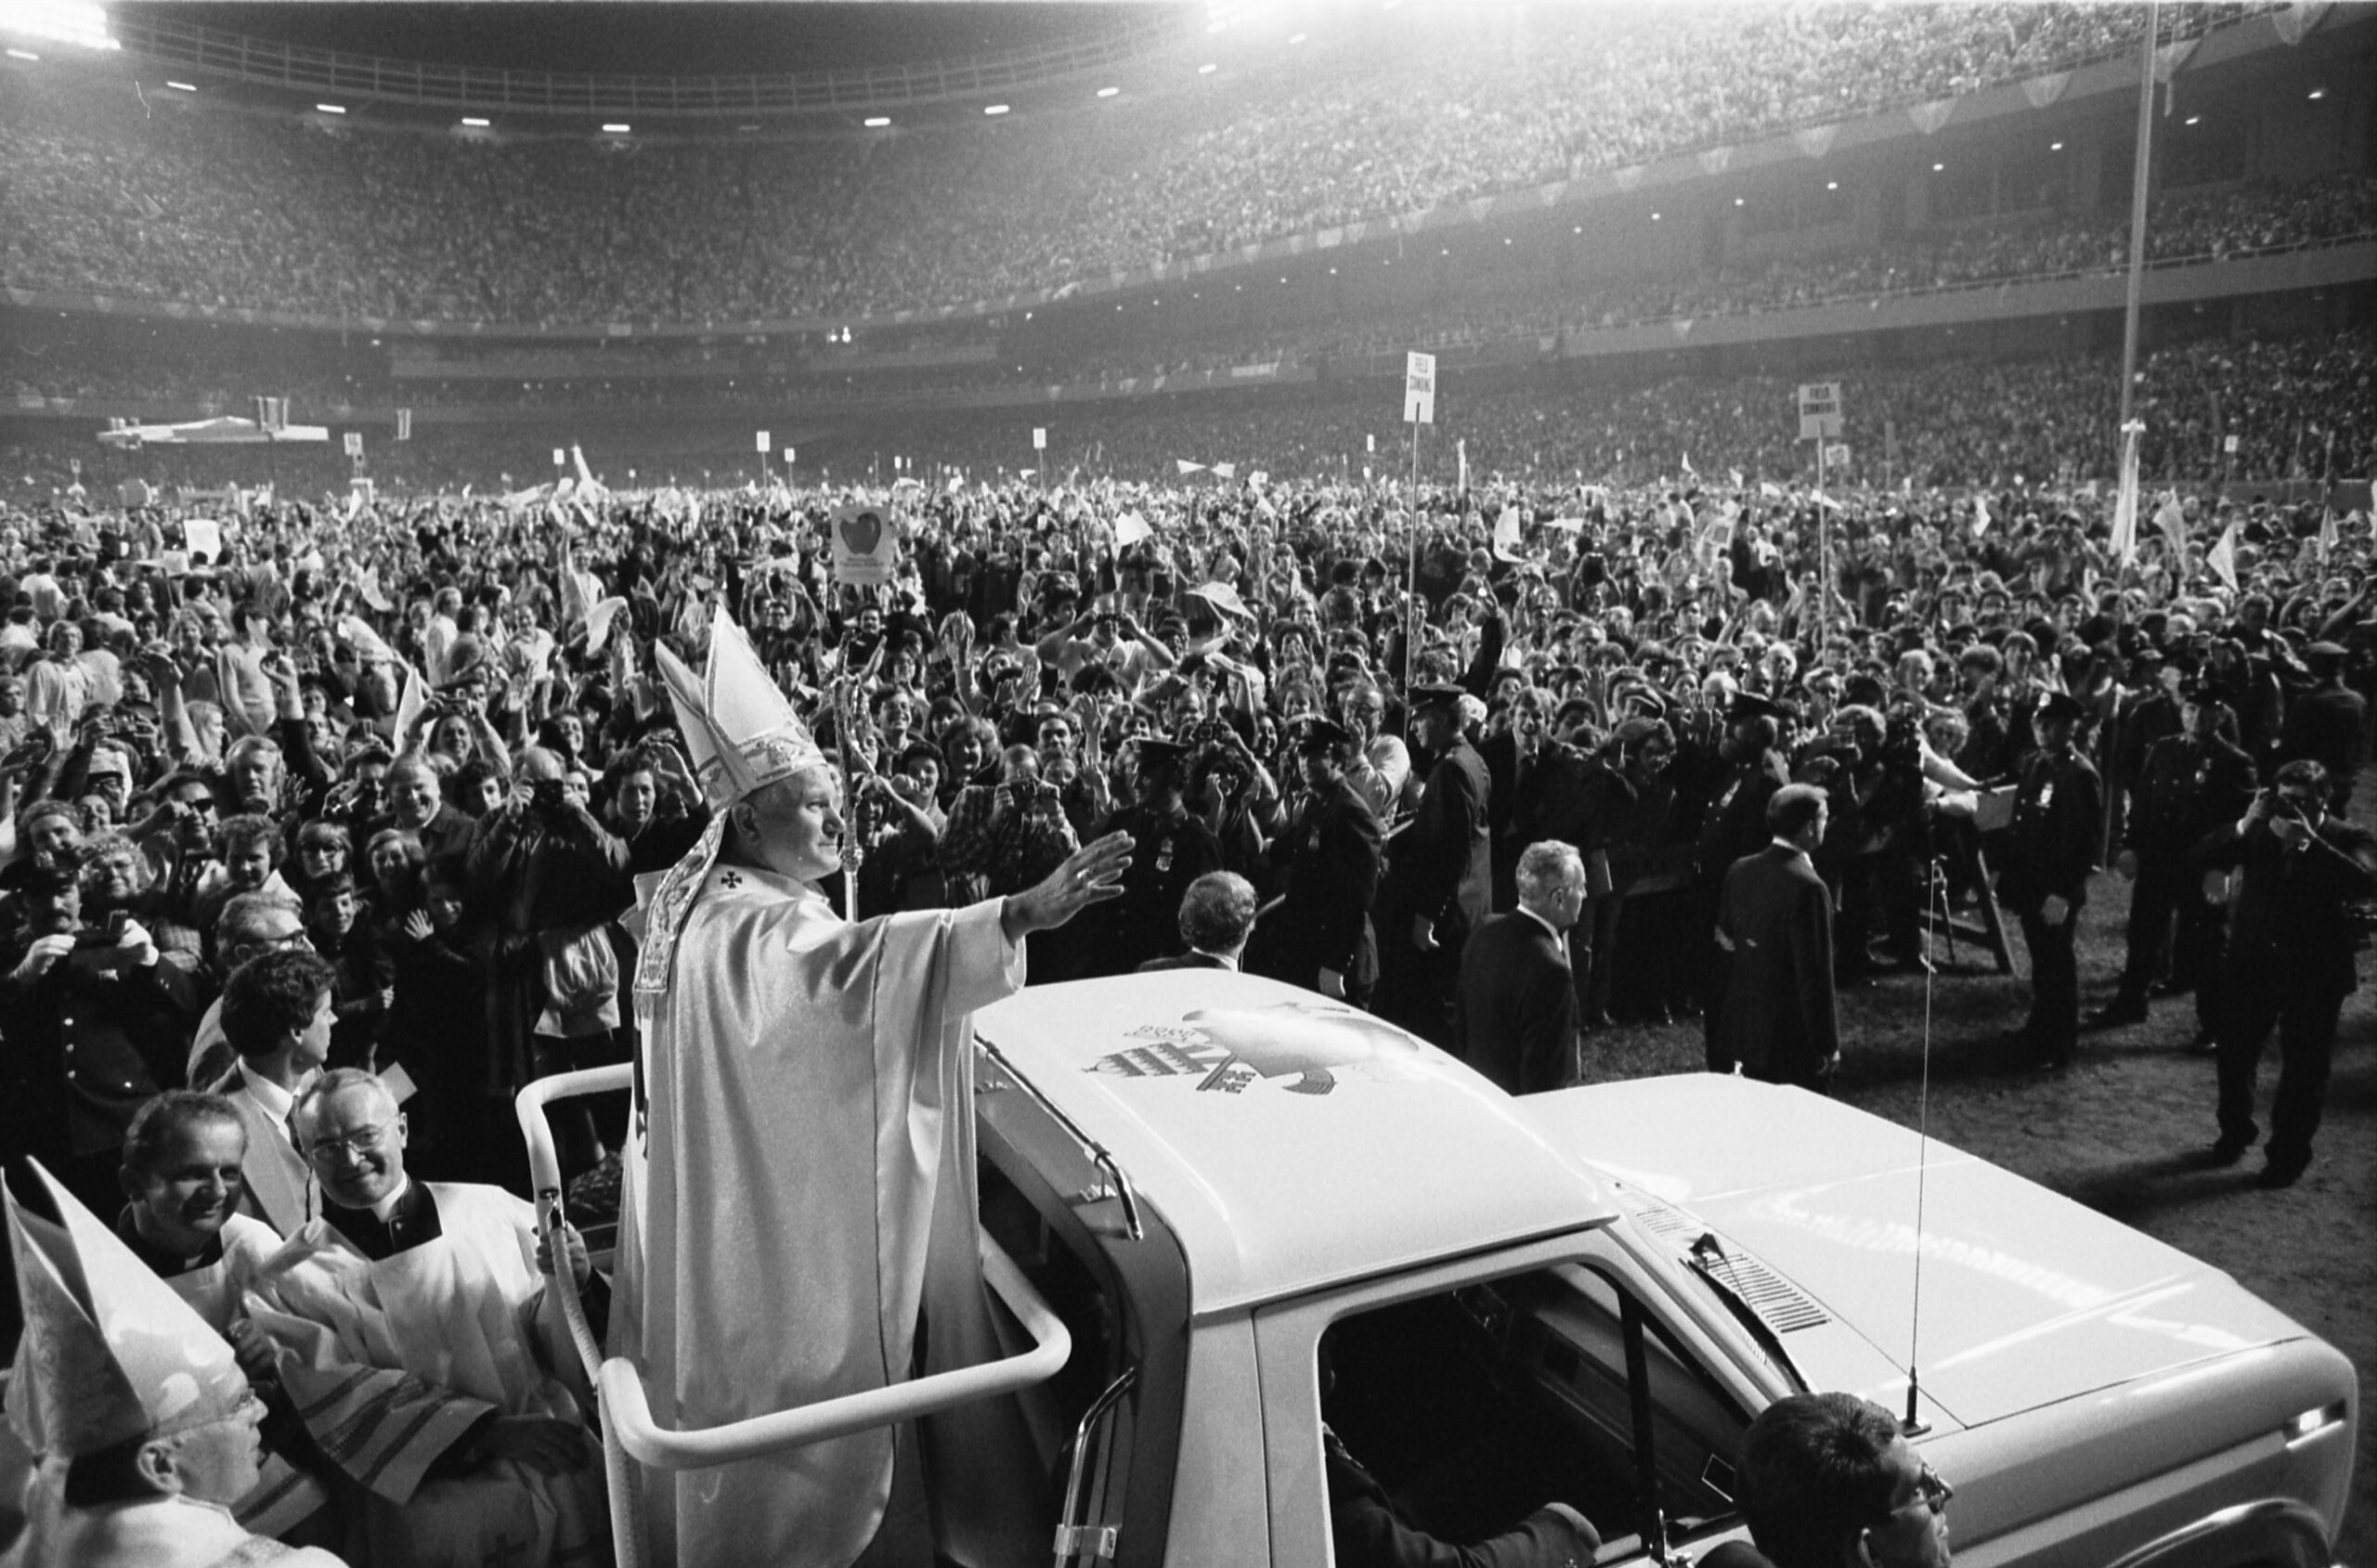 St. John Paul II – Unleashing Love